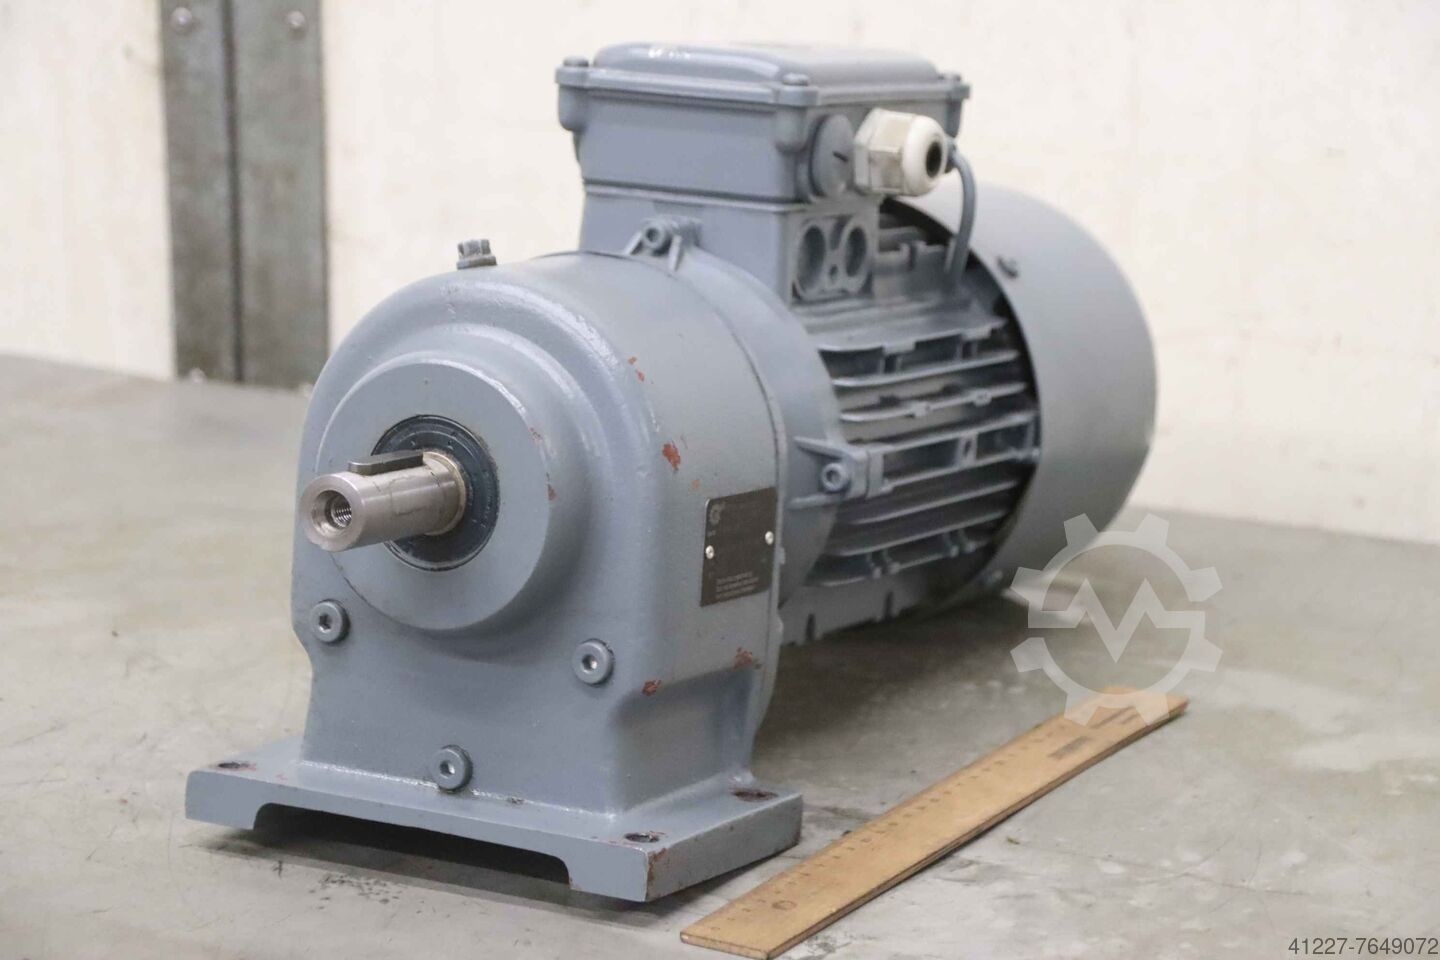 ▷ Getriebemotor 11 Kw 63 U Min B3 gebraucht kaufen - Maschinensucher AT